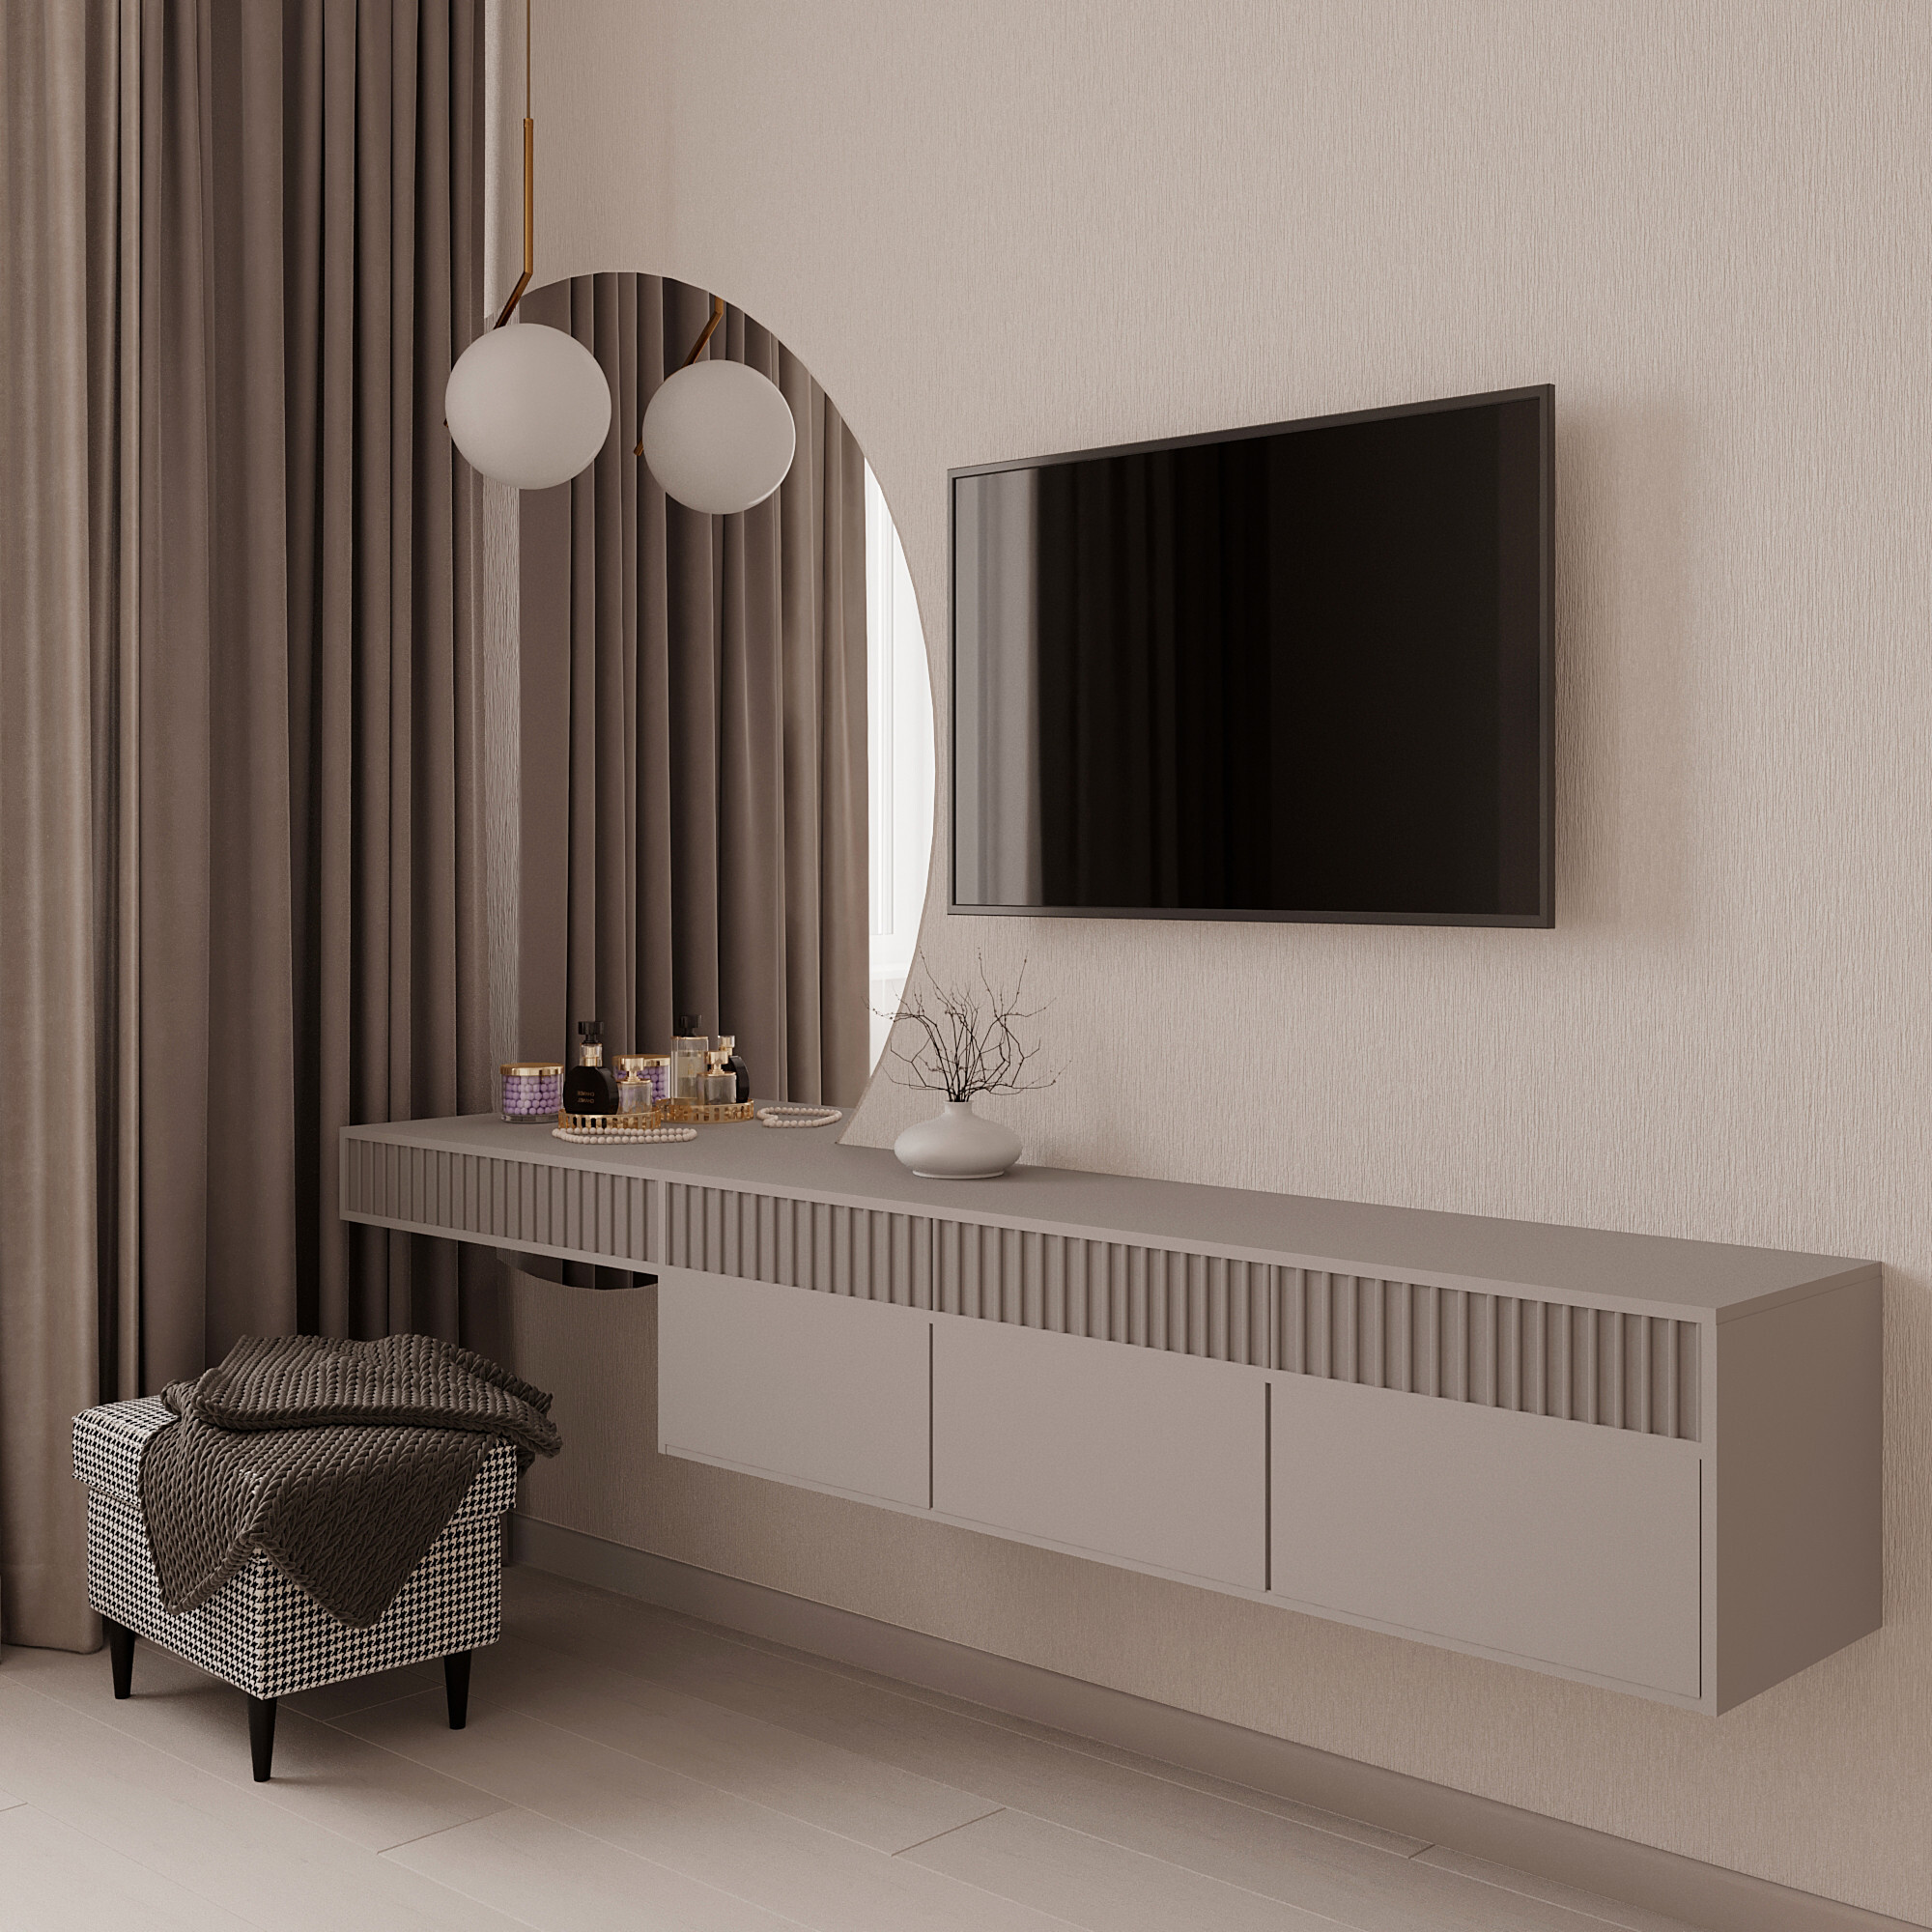 Интерьер cтеной с телевизором, телевизором на стене, нишей для телевизора и керамогранитом на стену с телевизором в современном стиле